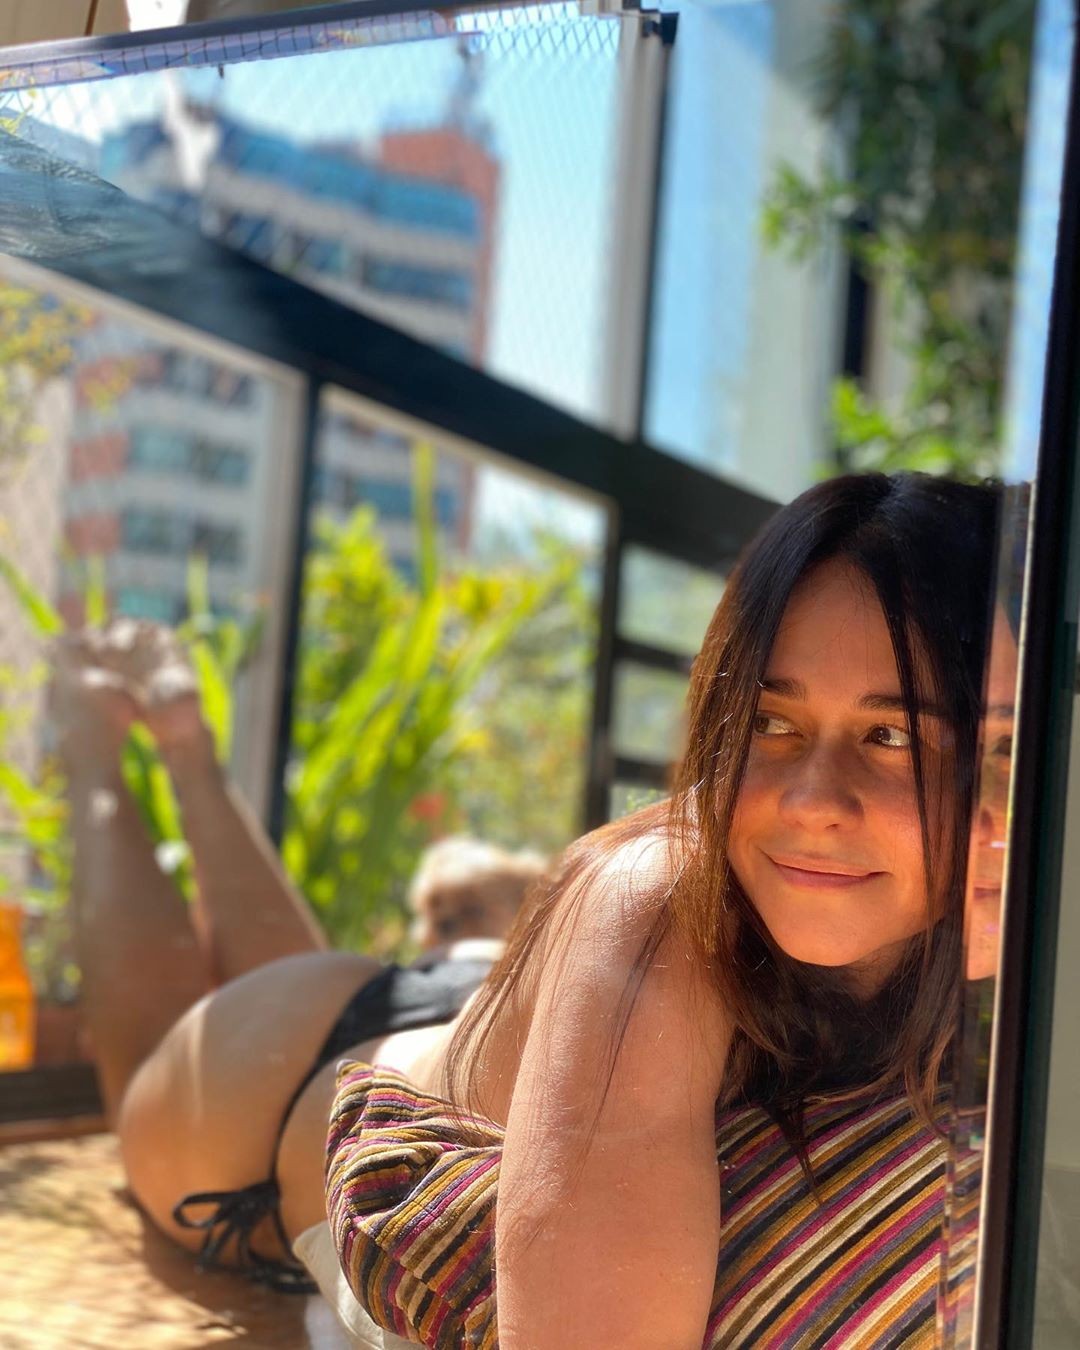 Alessandra Negrini toma sol na sacada de seu apartamento (Foto: Reprodução/Instagram)